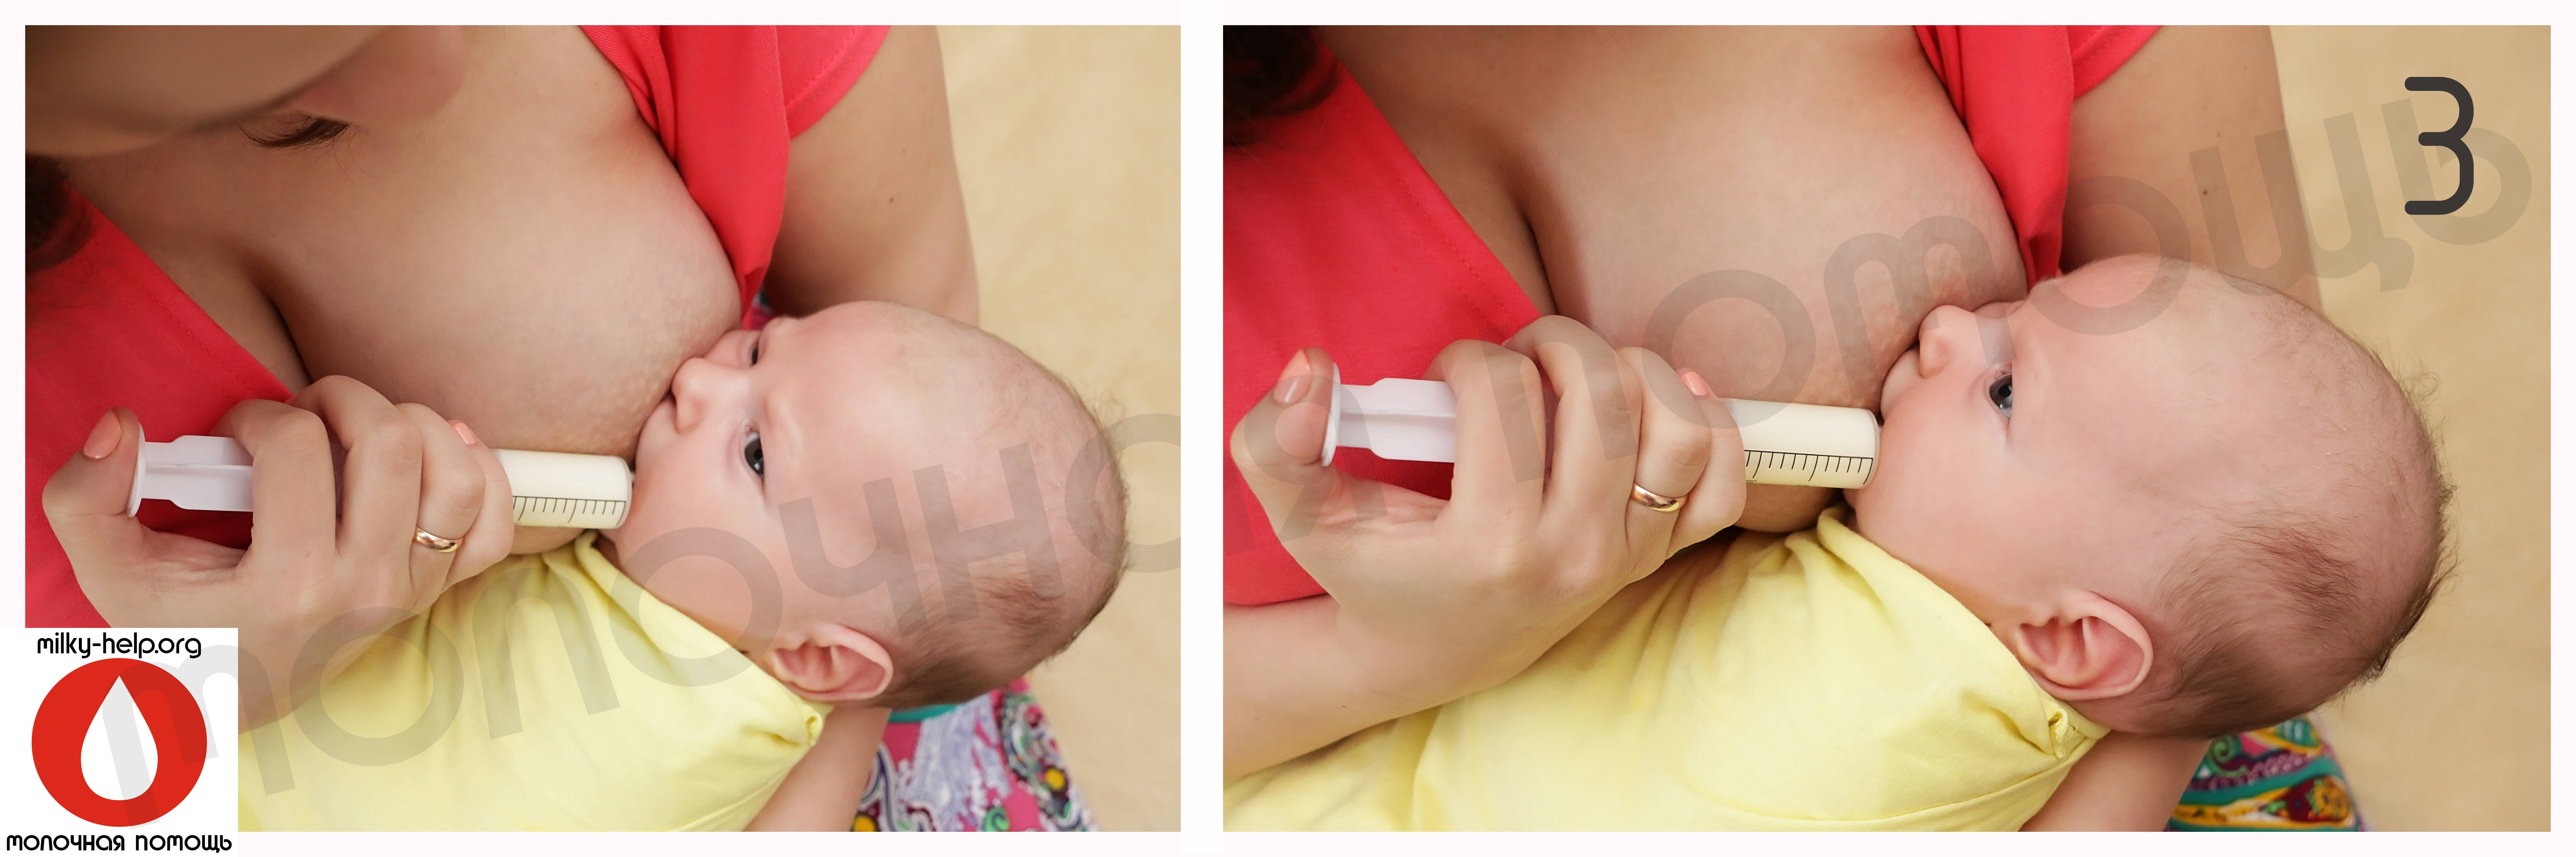 как изменяется грудь в ранние сроки беременности фото 108